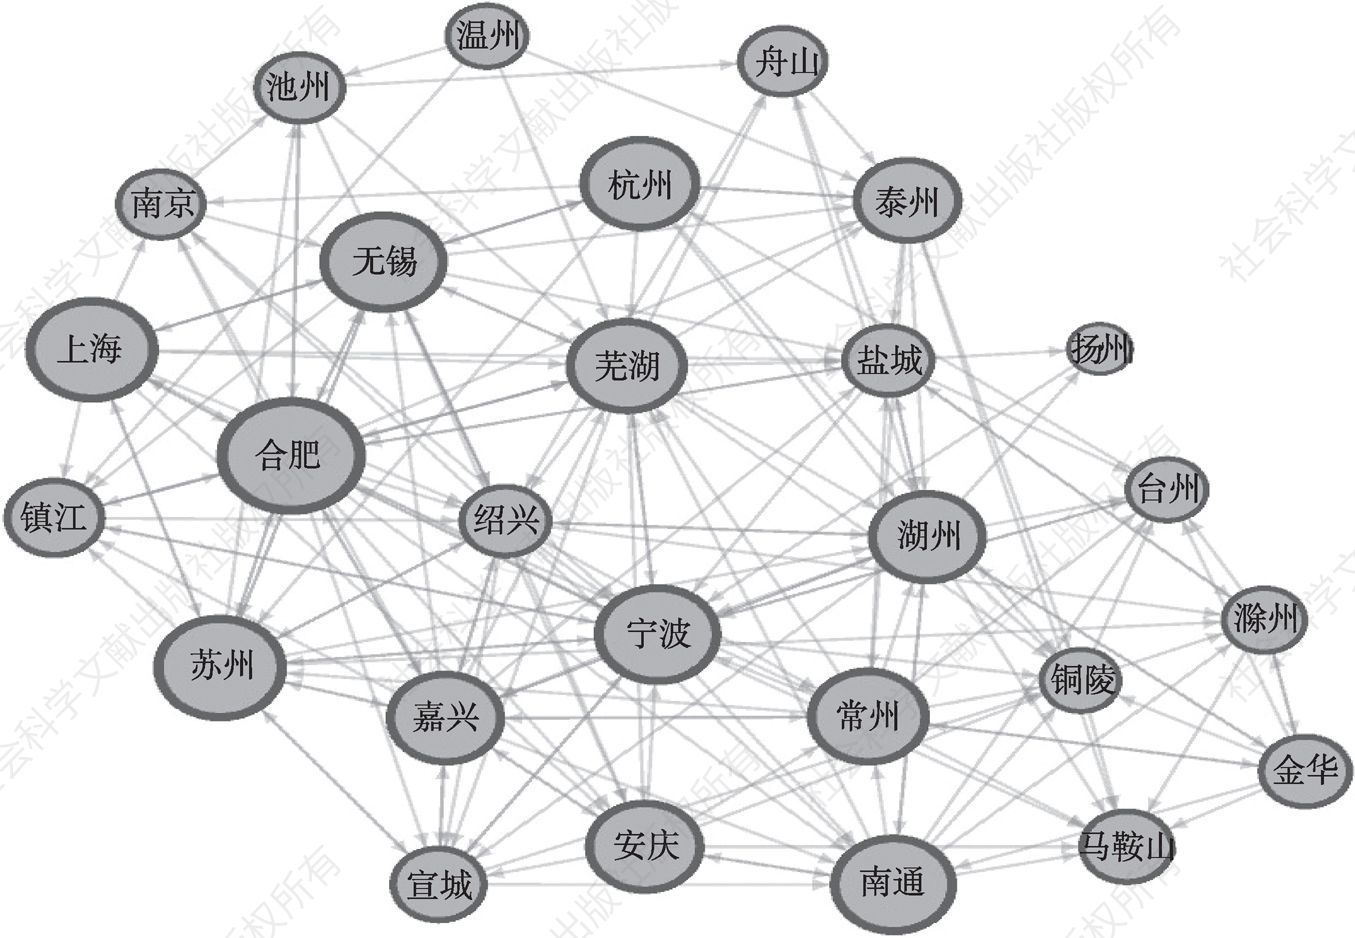 图14 2017～2019年长三角中心区27个城市房价涟漪效应的社会网络分析